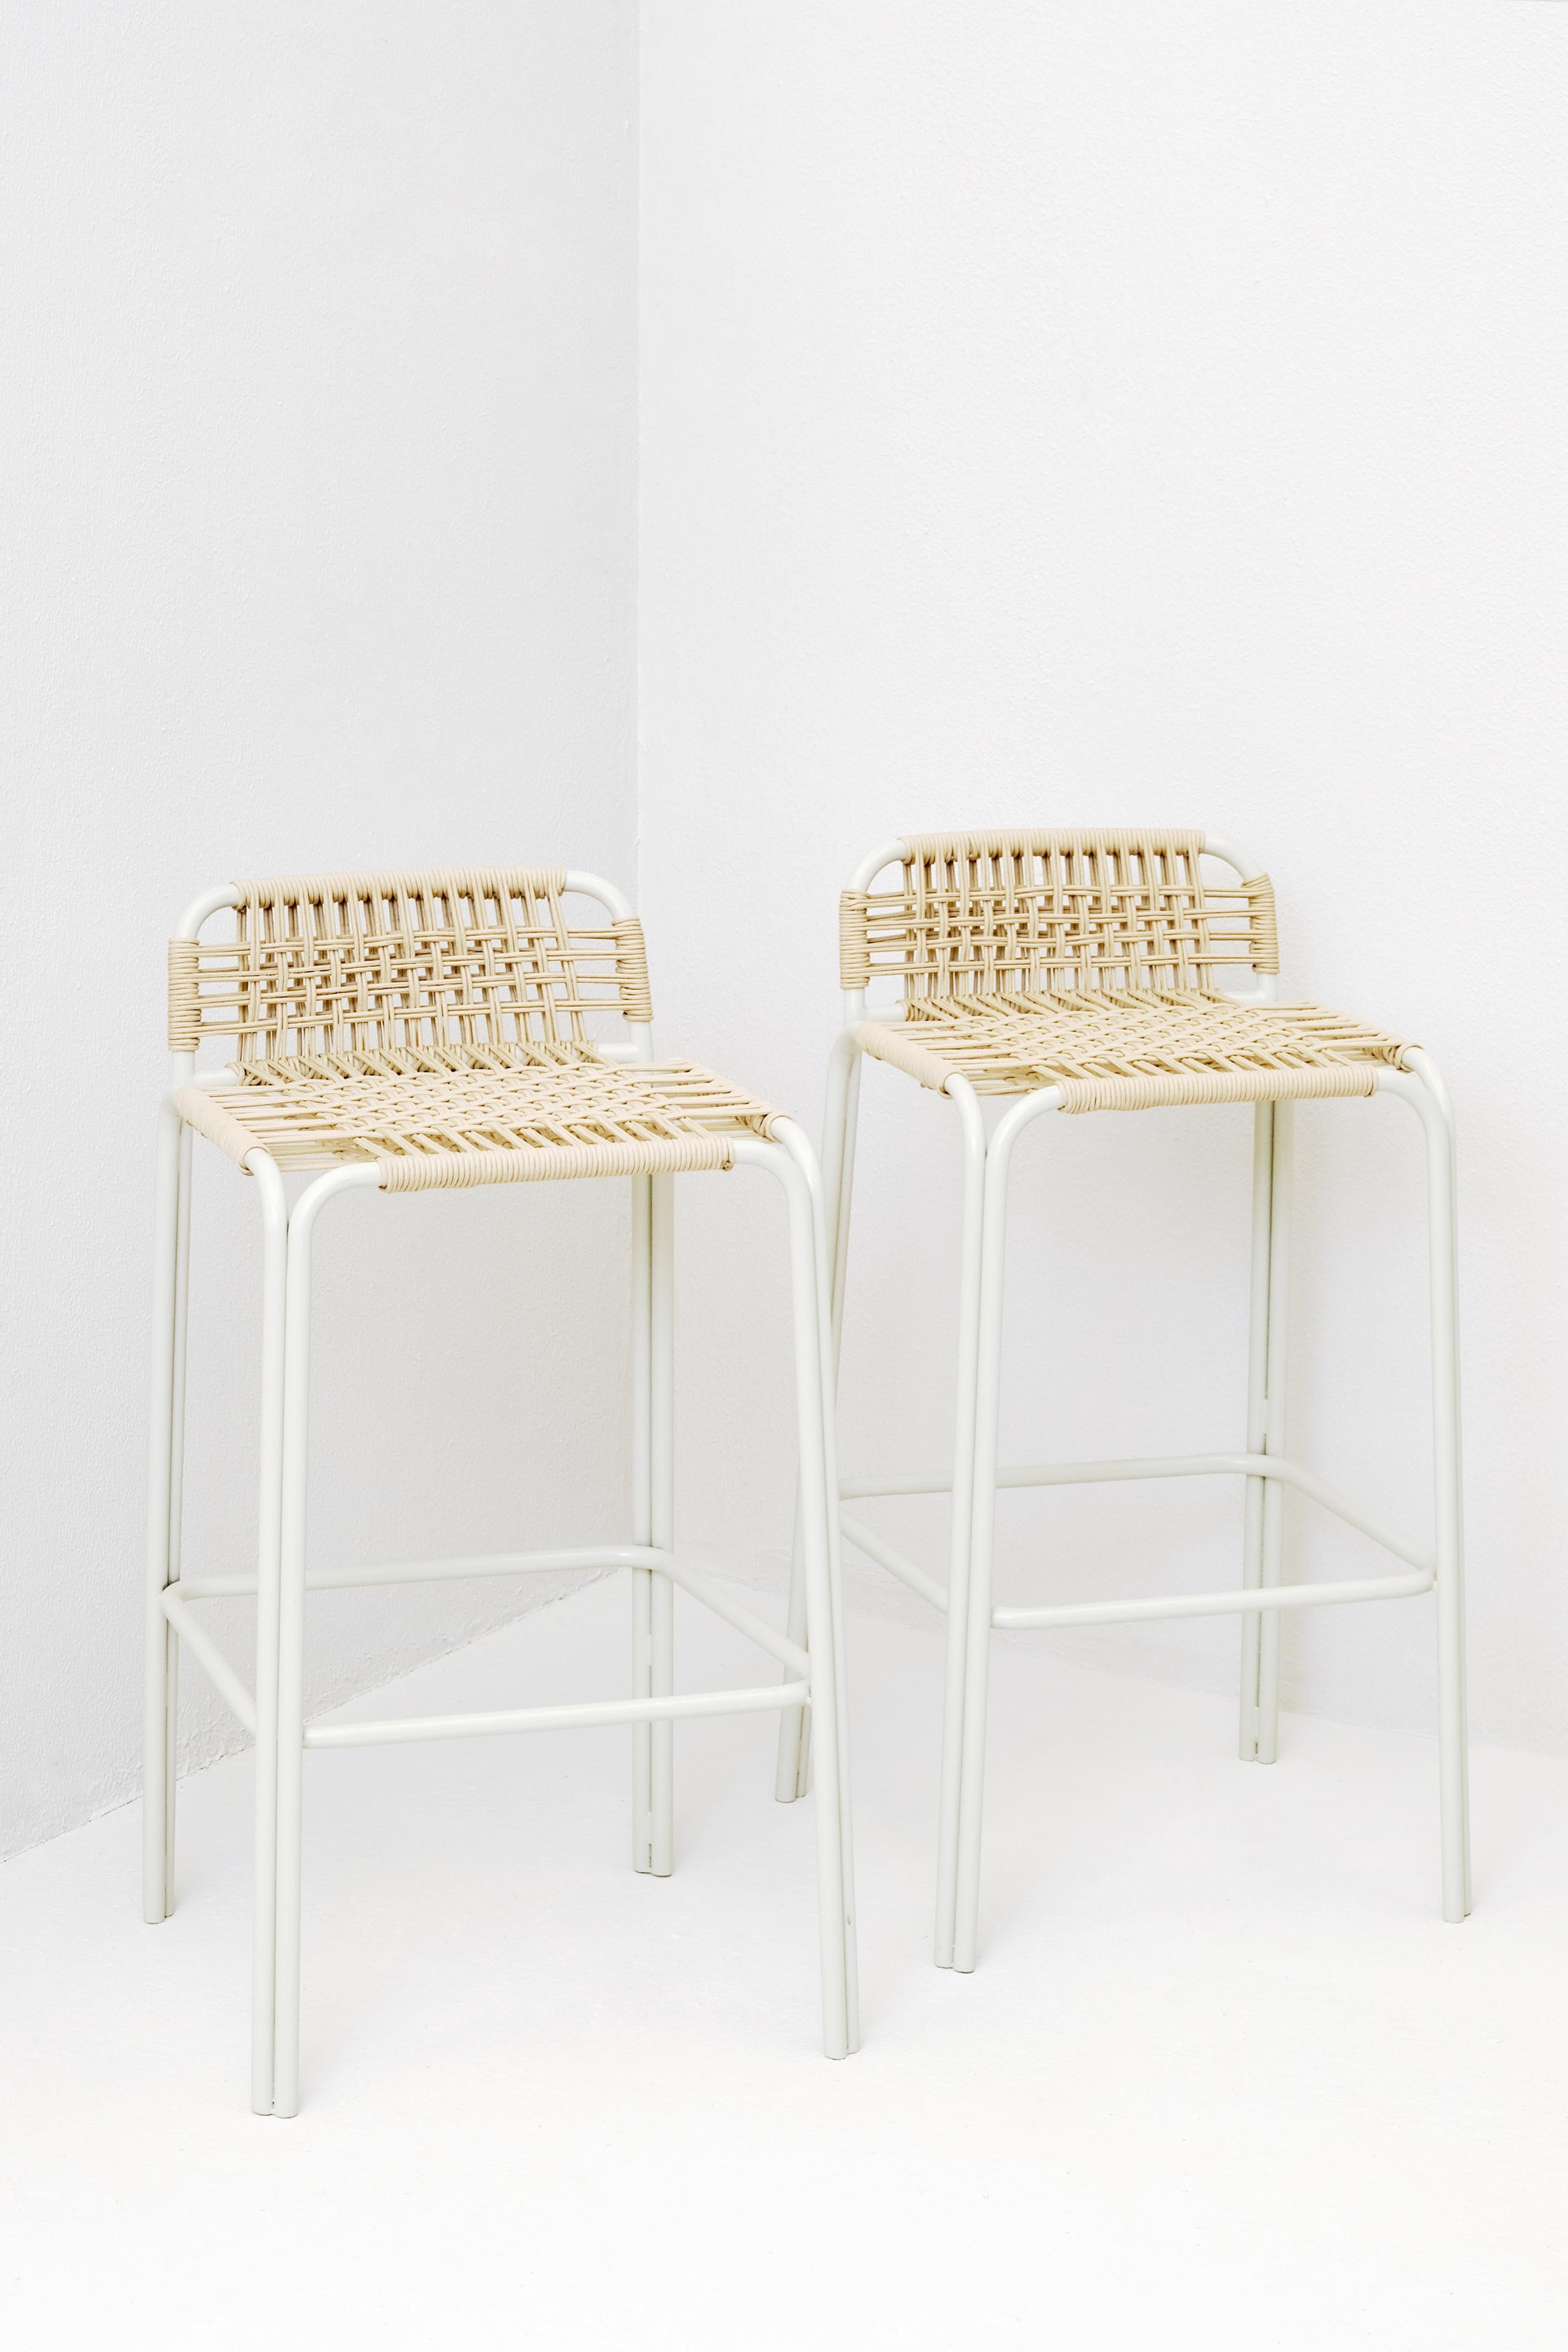 Ensemble de 2 chaises de bar Penca de Francisco Torres
Dimensions : D 45 x L 38 x H 91 cm. SH : 76 cm.
MATERIAL : Acier et corde.

Convient pour l'extérieur. Option disponible en revêtement poudre noir mat et tissé en corde polypropylène tressée